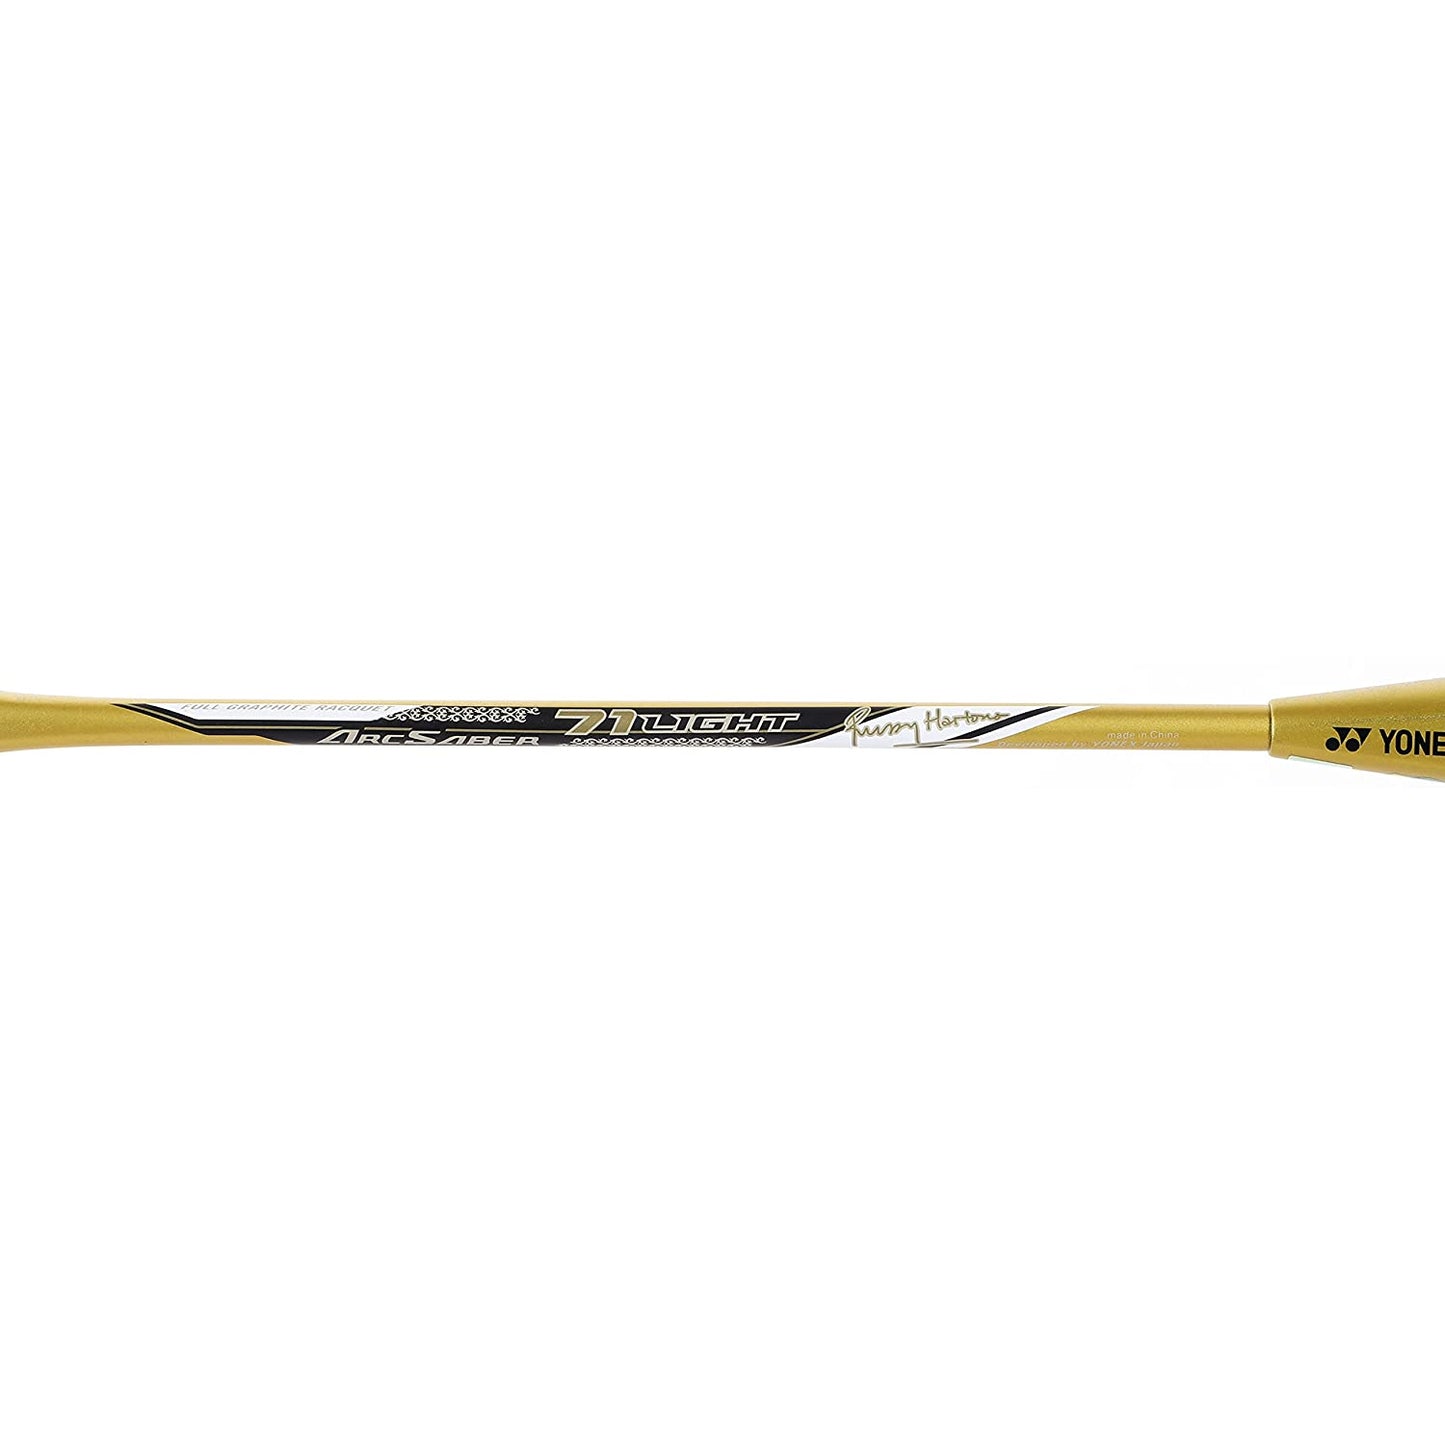 Yonex Arcsaber 71 Light Strung Badminton Racquet, G4 - Gold - Best Price online Prokicksports.com